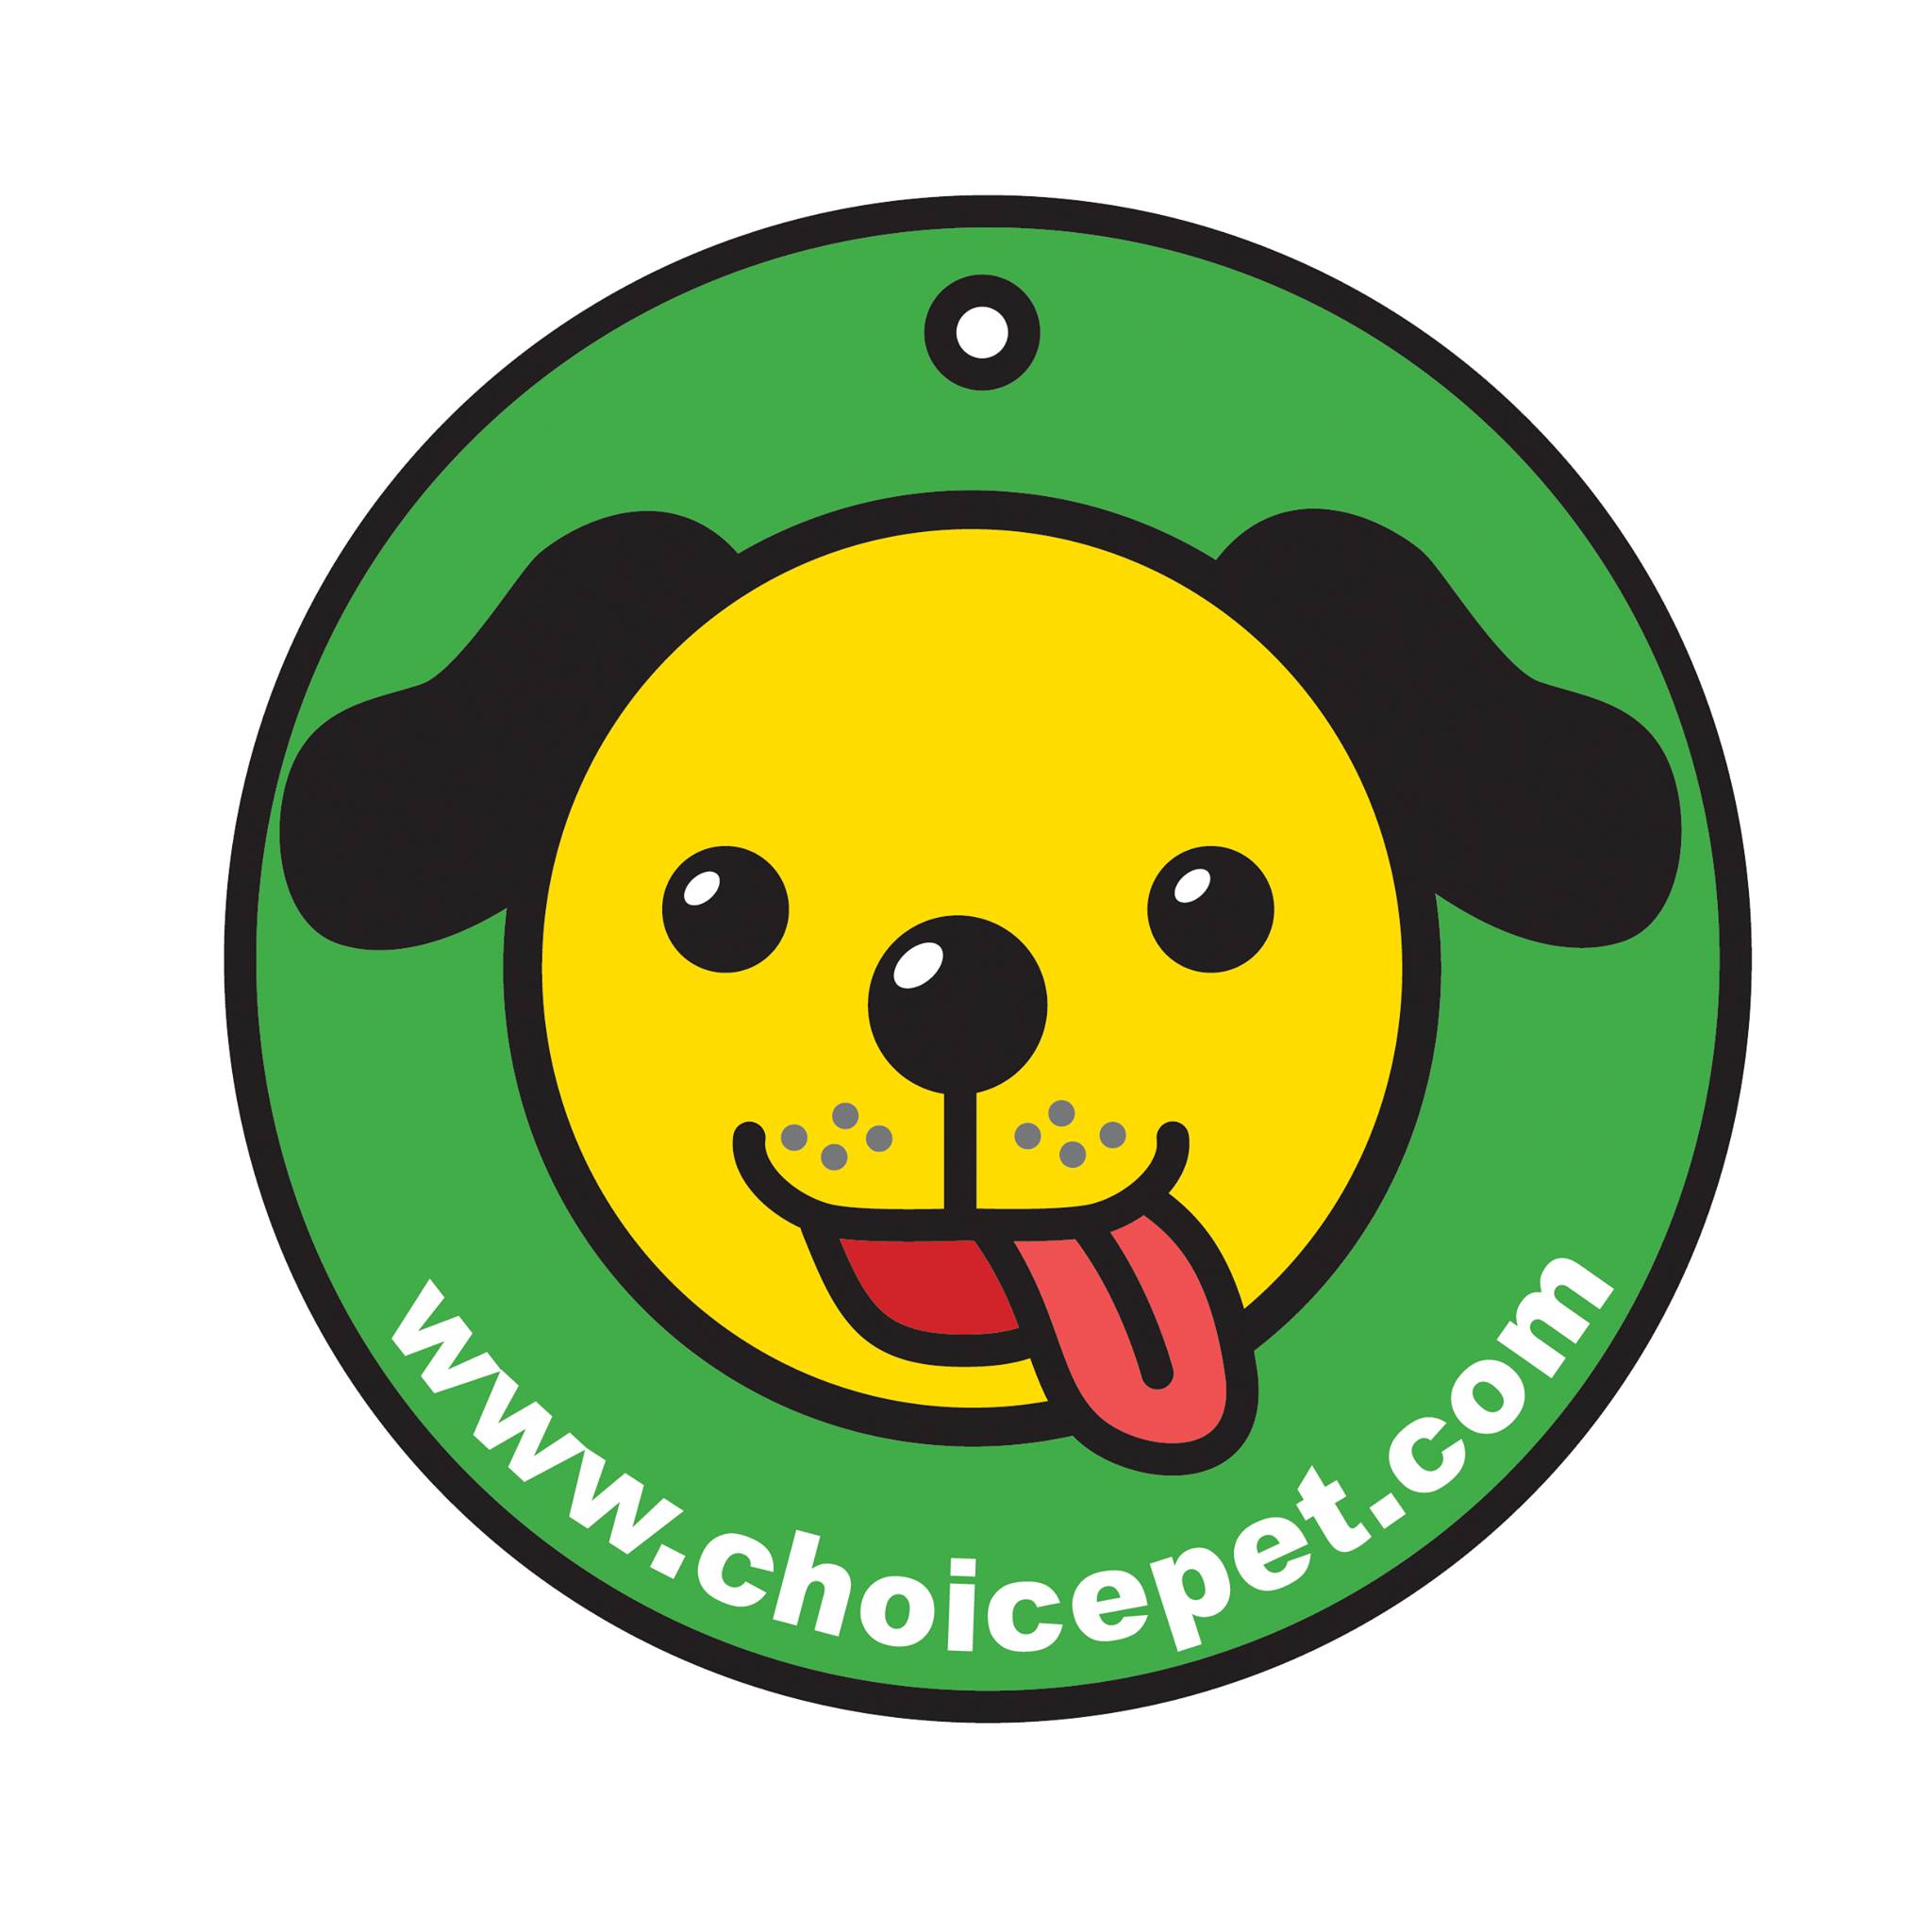 Company logo of Choice Pet - Fairfield